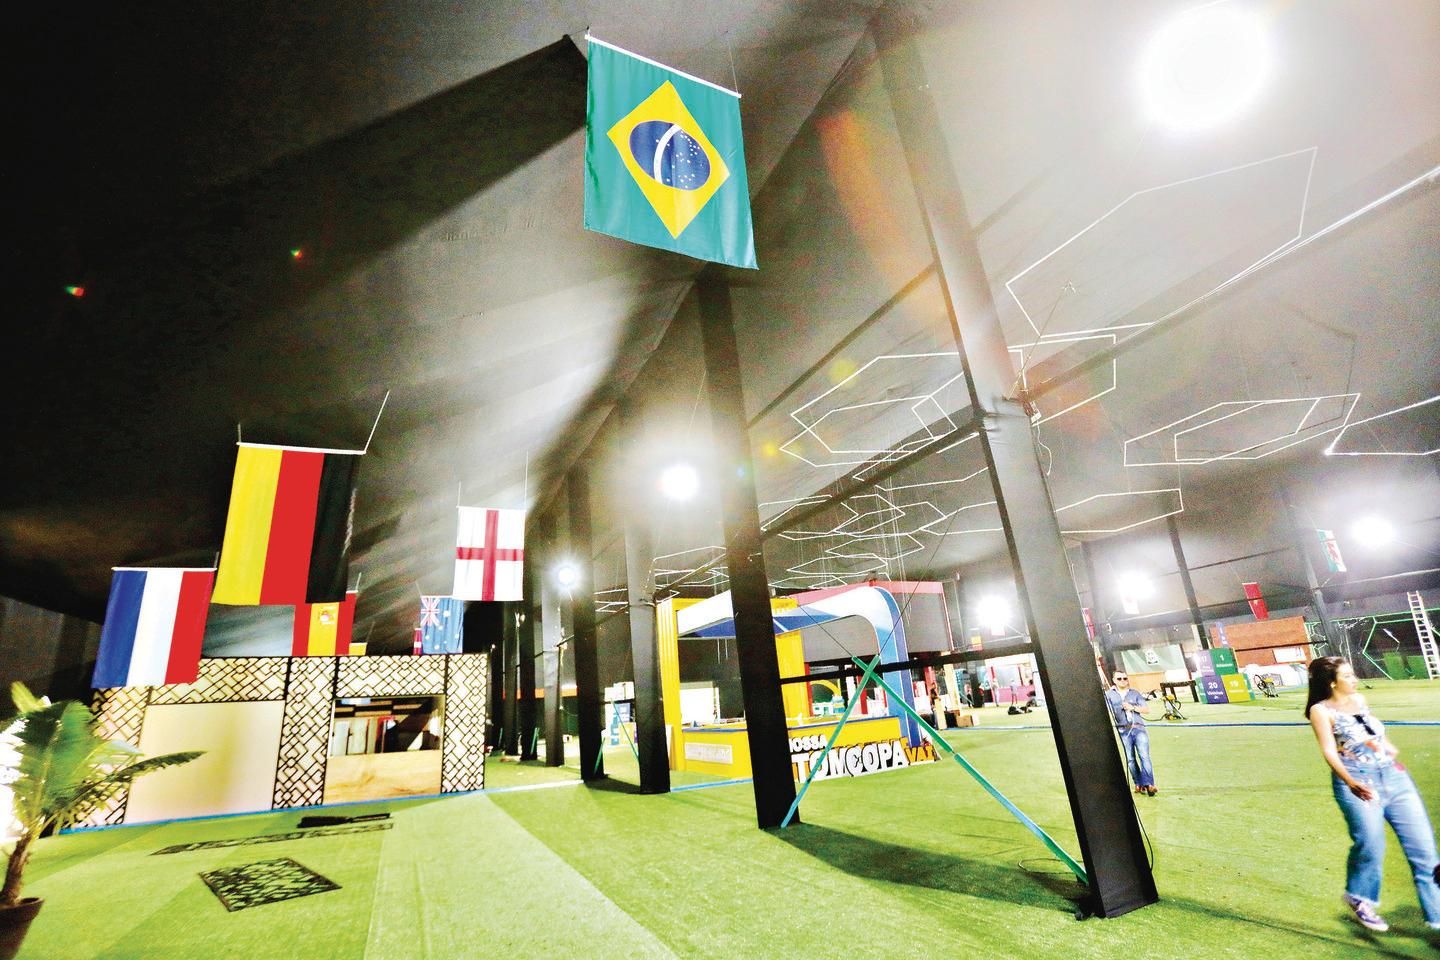 TRT-8 informa funcionamento durante os dias dos jogos da Seleção Brasileira  na Copa do Mundo